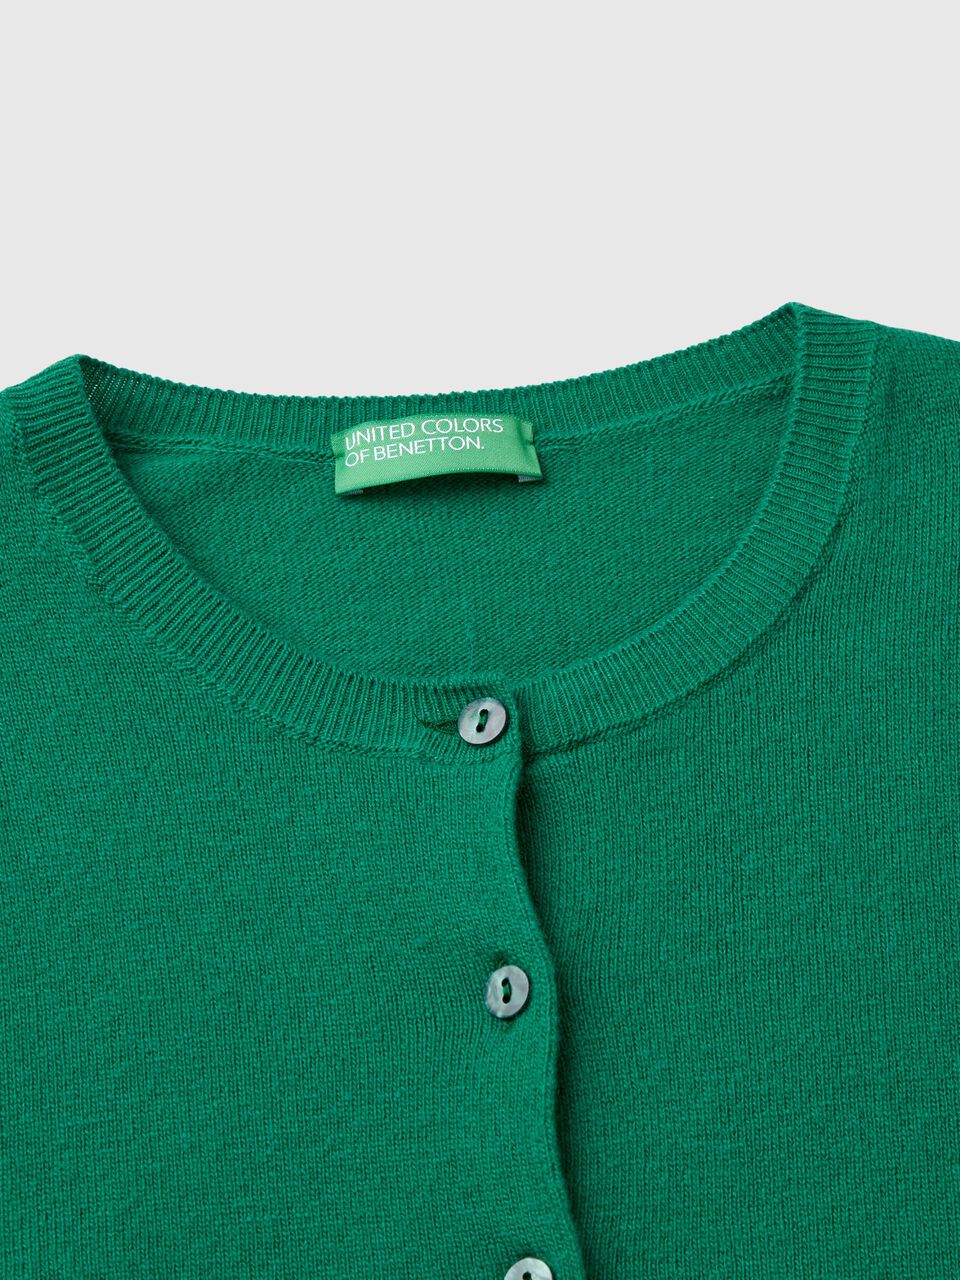 Strickjacke aus reiner Merinowolle in Waldgrün mit Rundausschnitt - Grün |  Benetton